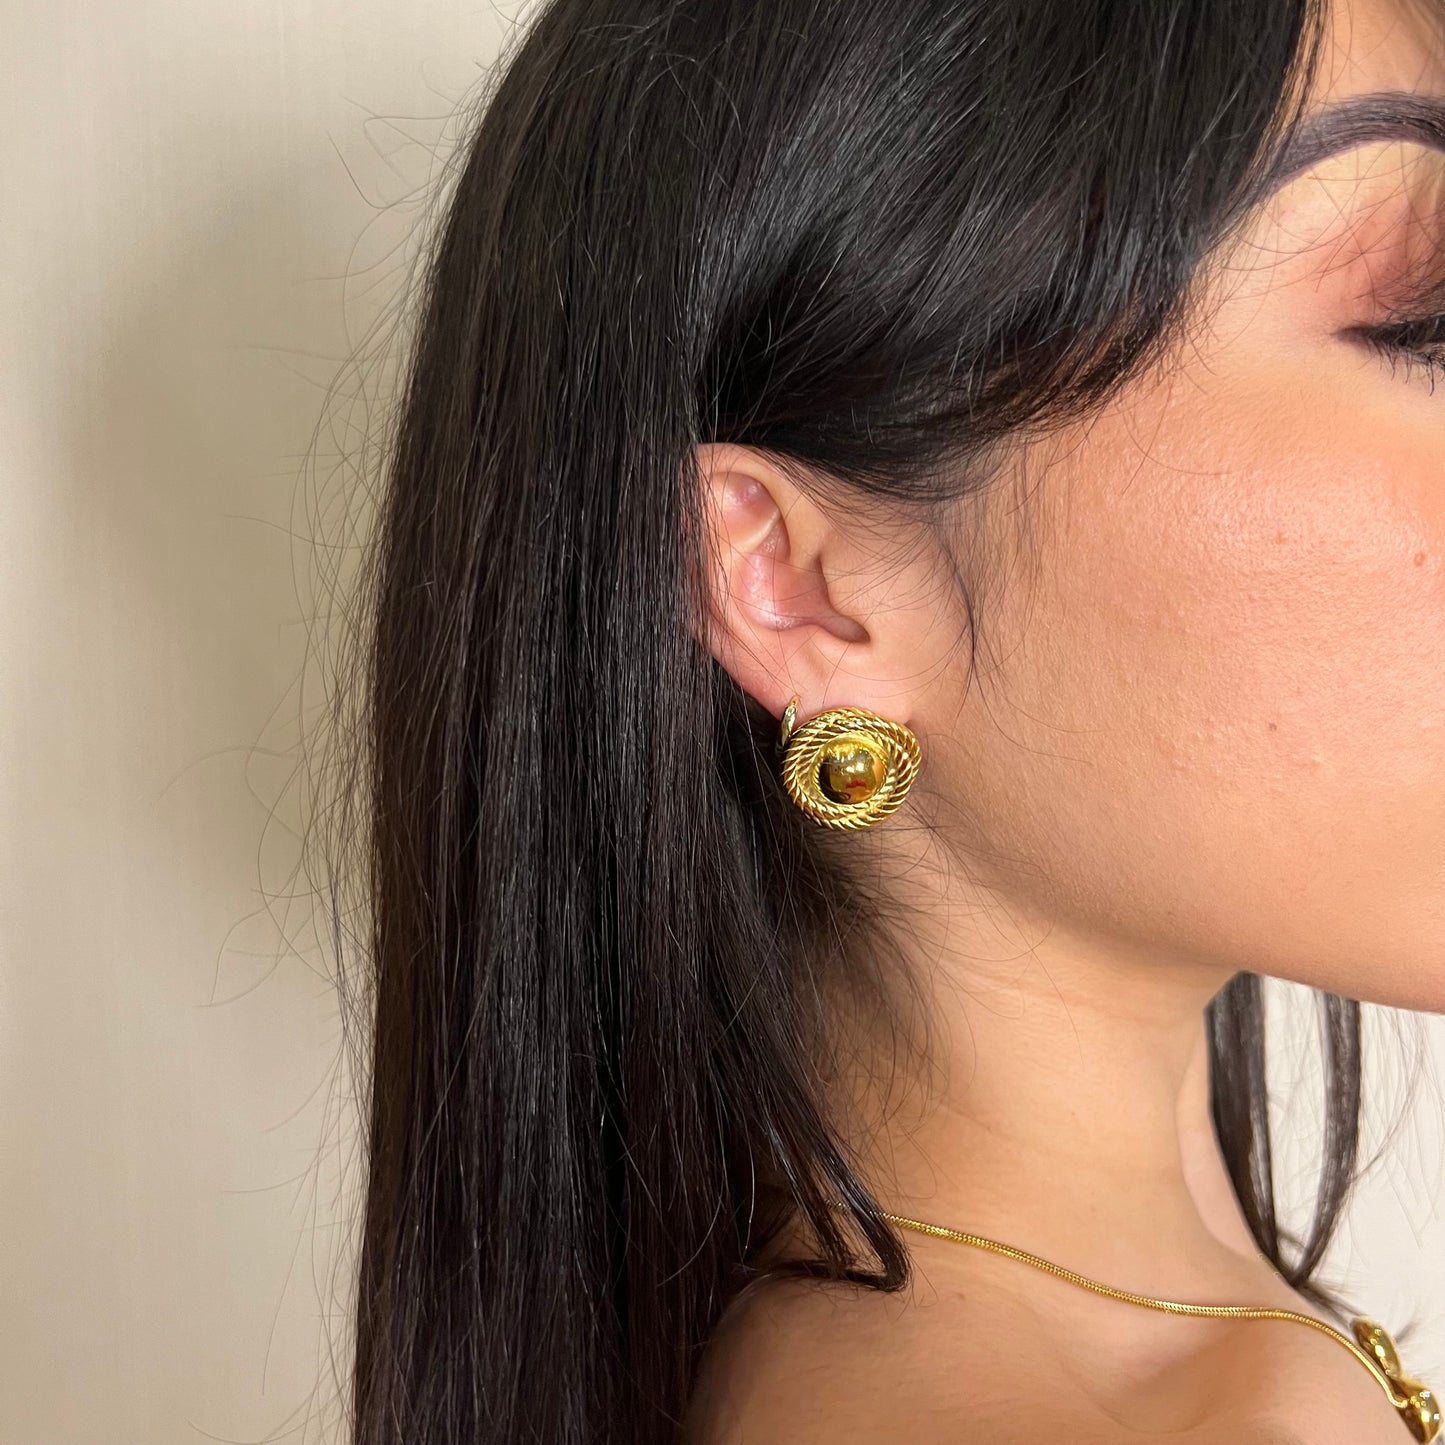 Iconic earrings